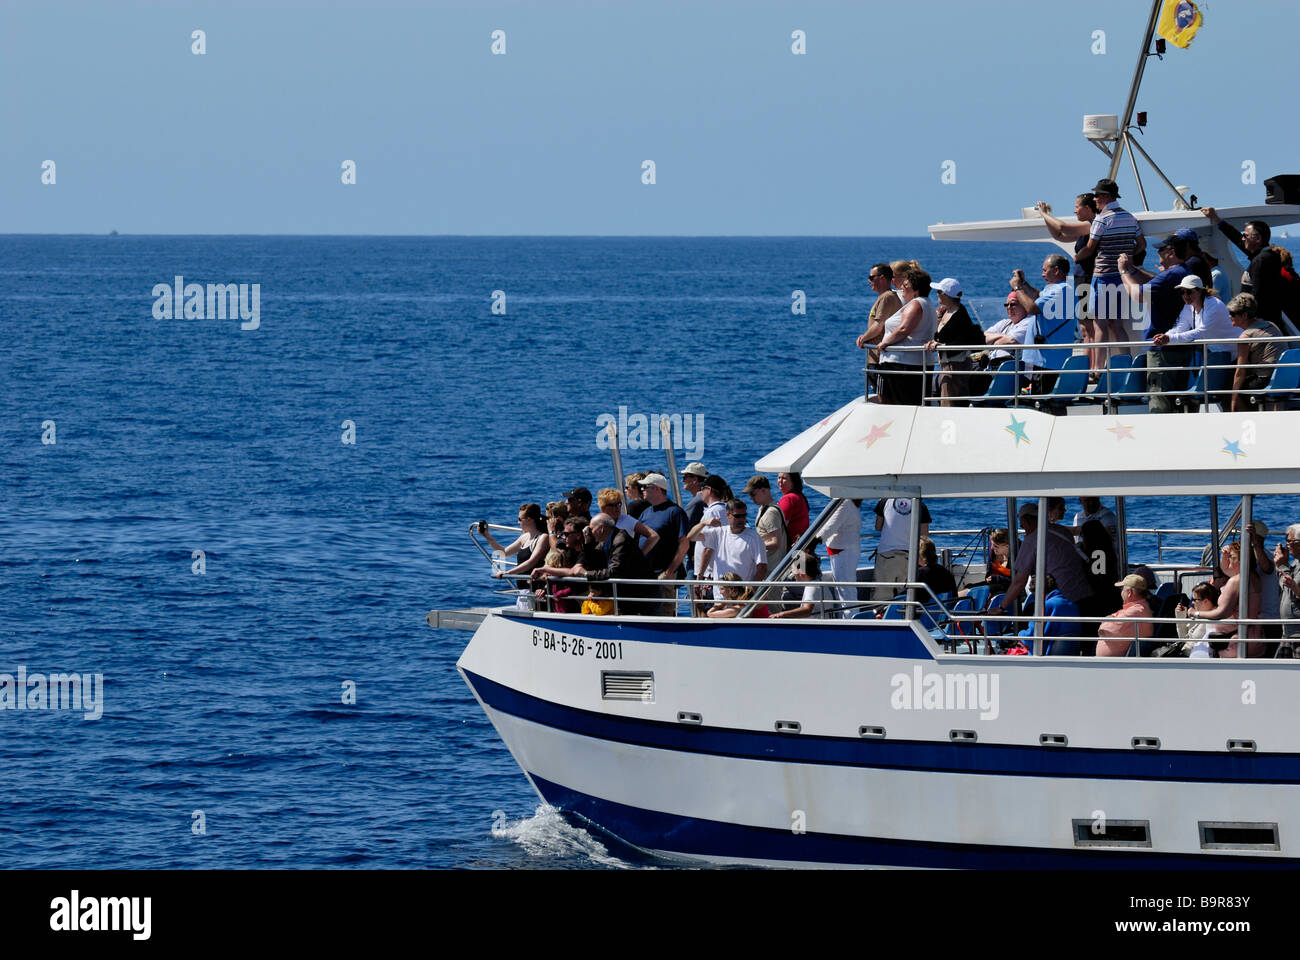 Die Exciment unter den Touristen auf dem Delphin Suche Boot. Puerto Rico, Gran Canaria, Kanarische Inseln, Spanien, Europa. Stockfoto